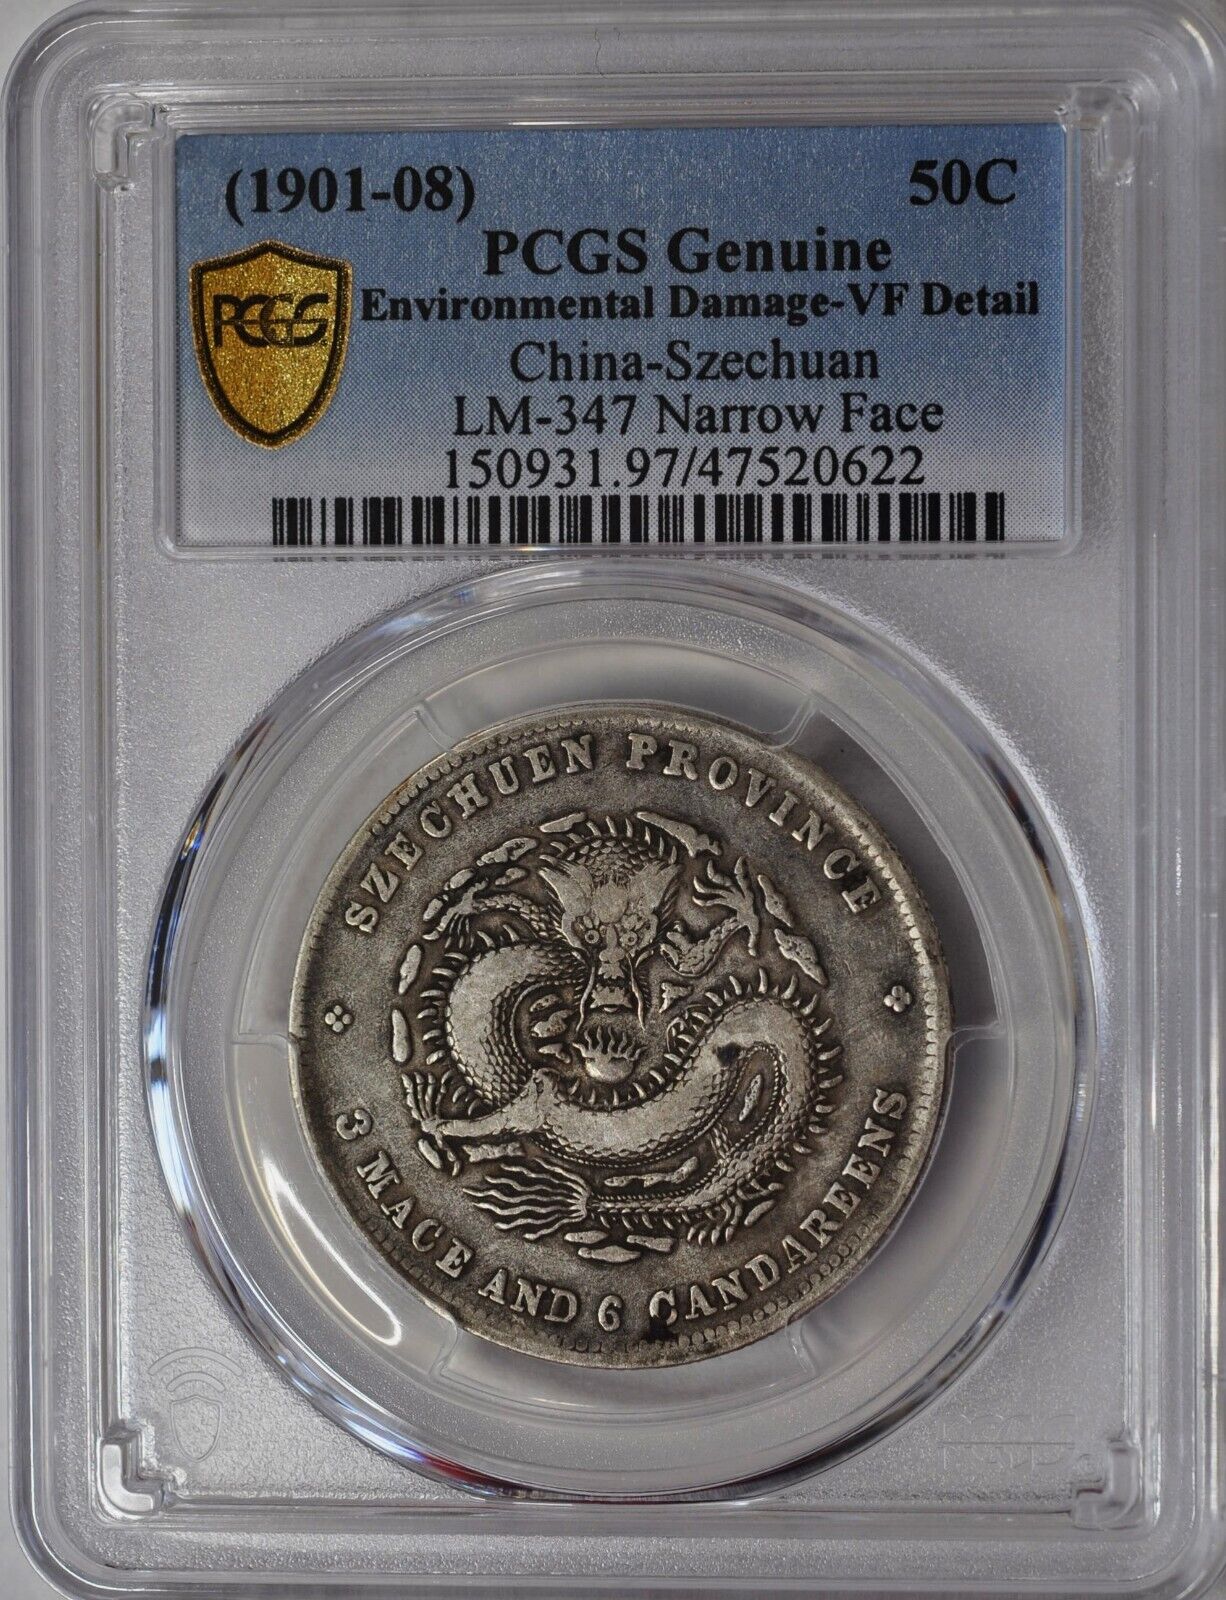 1901 China Szechuan 50 Cents Narrow Face PCGS VF L&M-347 原汁原味四川光绪老龙半圆银币